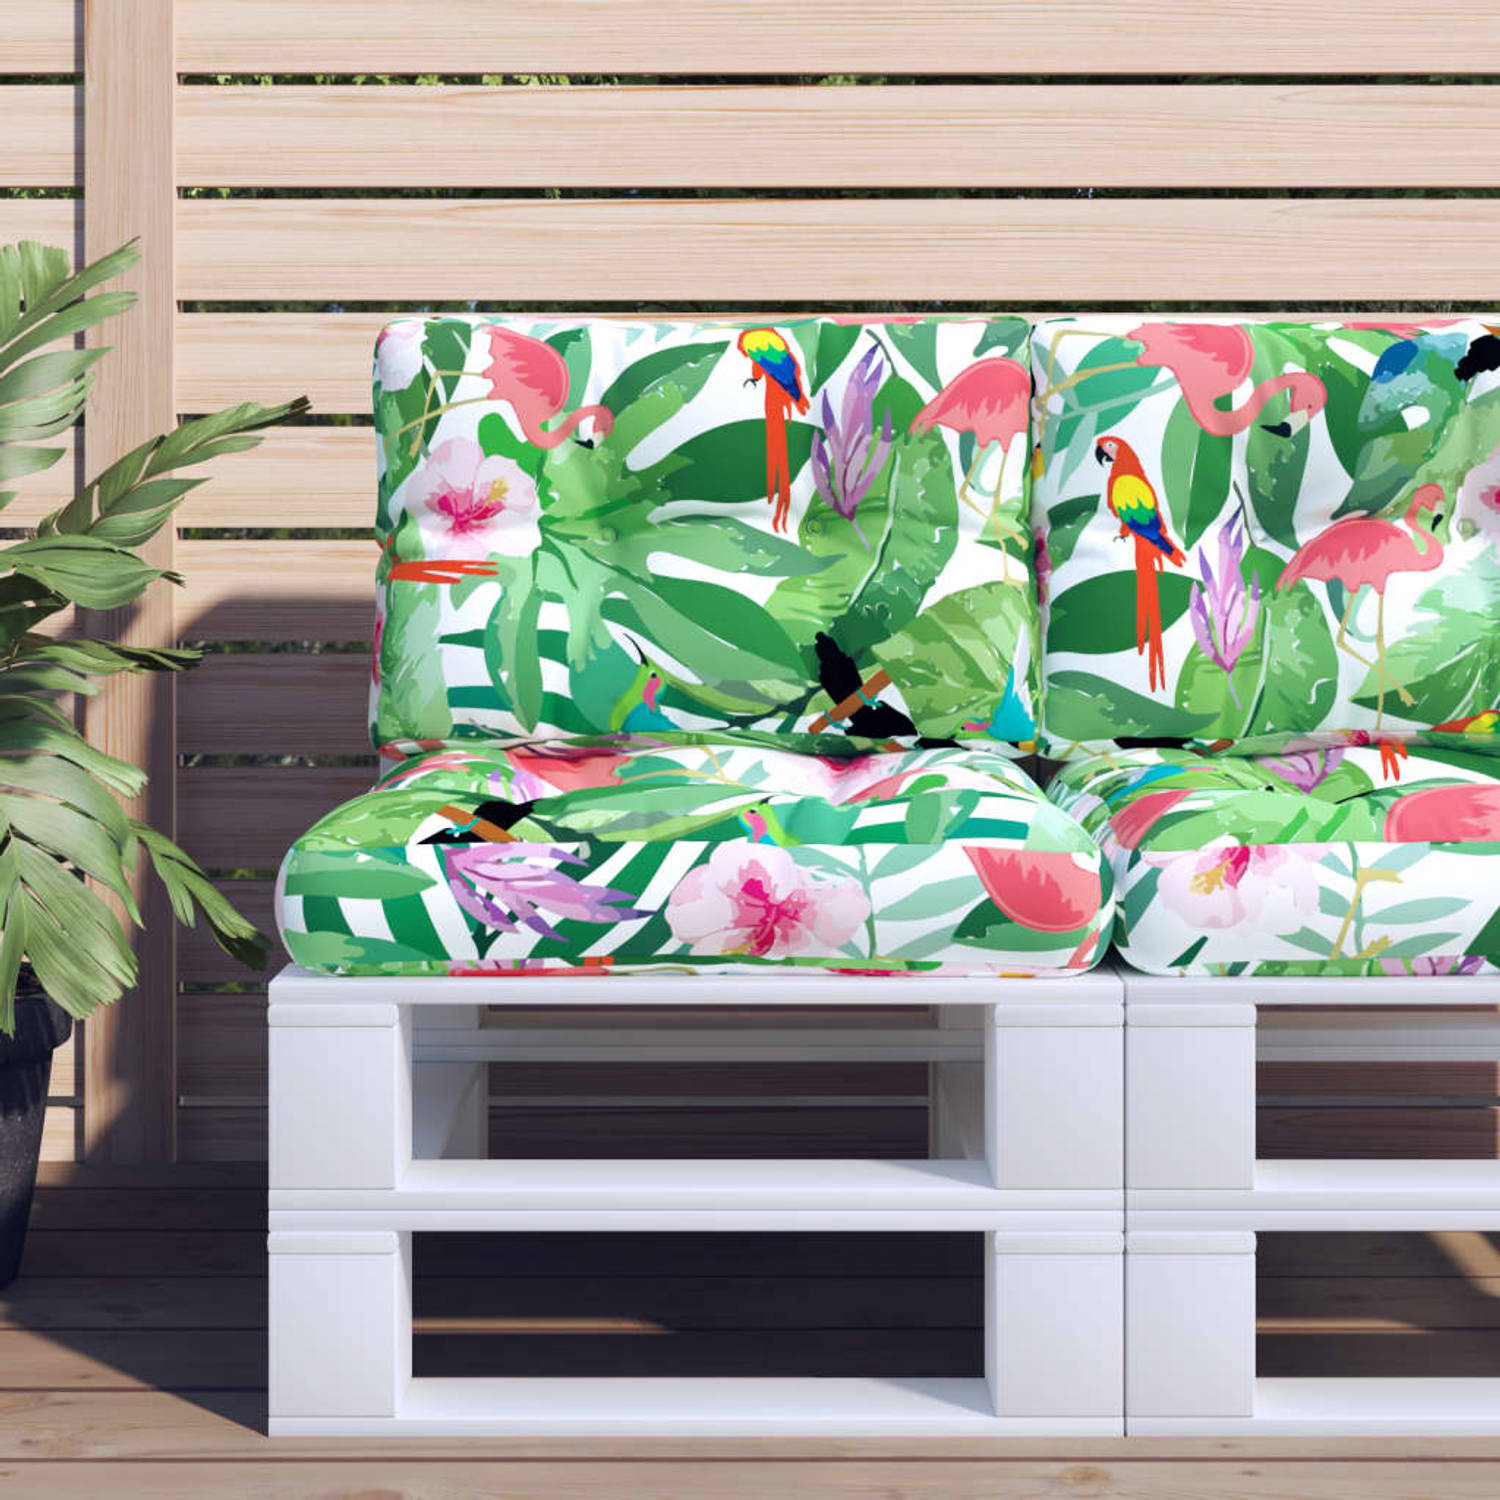 The Living Store Palletkussens - Comfortabele polyester kussens - 60 x 60 x 12 cm - Met vogels - bladeren en bloemen